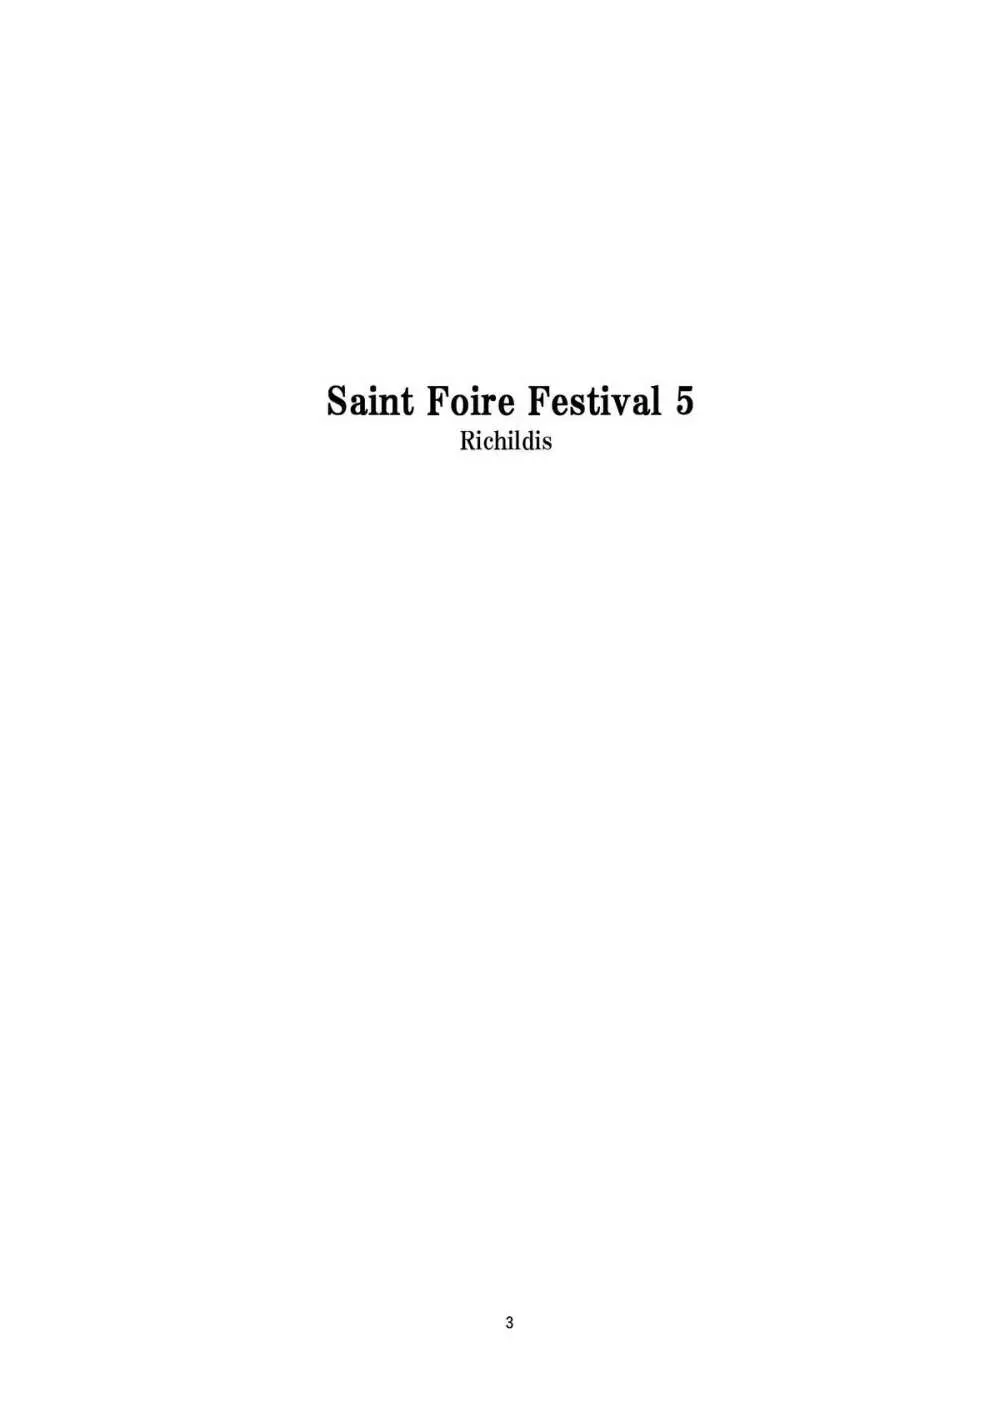 Saint Foire Festival 5 3ページ